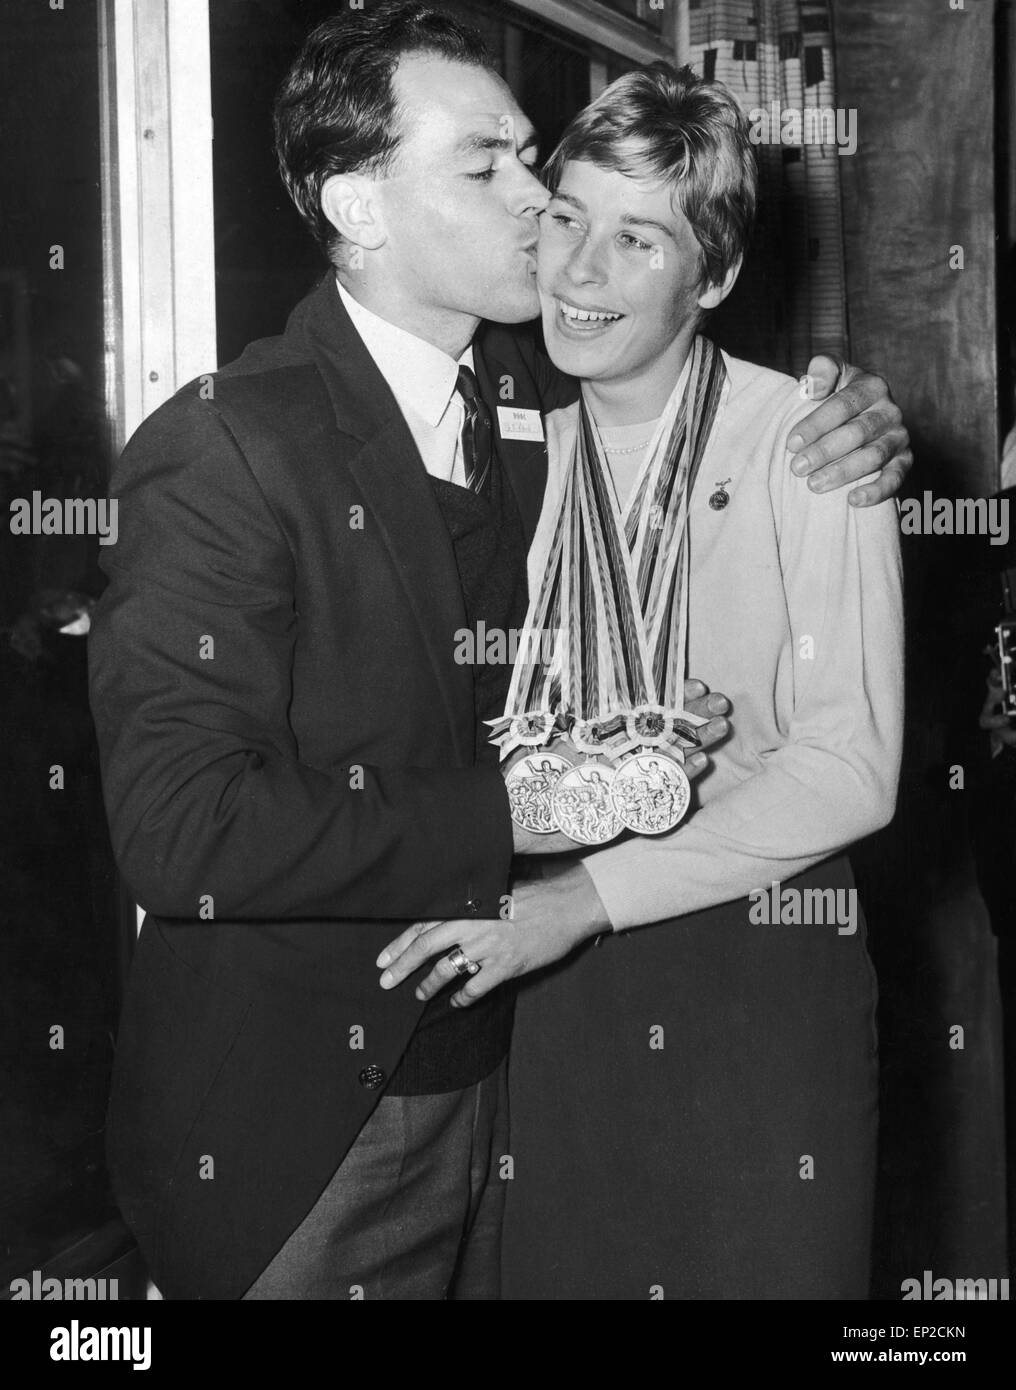 Médaillé d'or de Tokyo Mary Rand est rencontré par son mari Sid sur son retour des Jeux Olympiques. 20 Octobre 1964 Banque D'Images